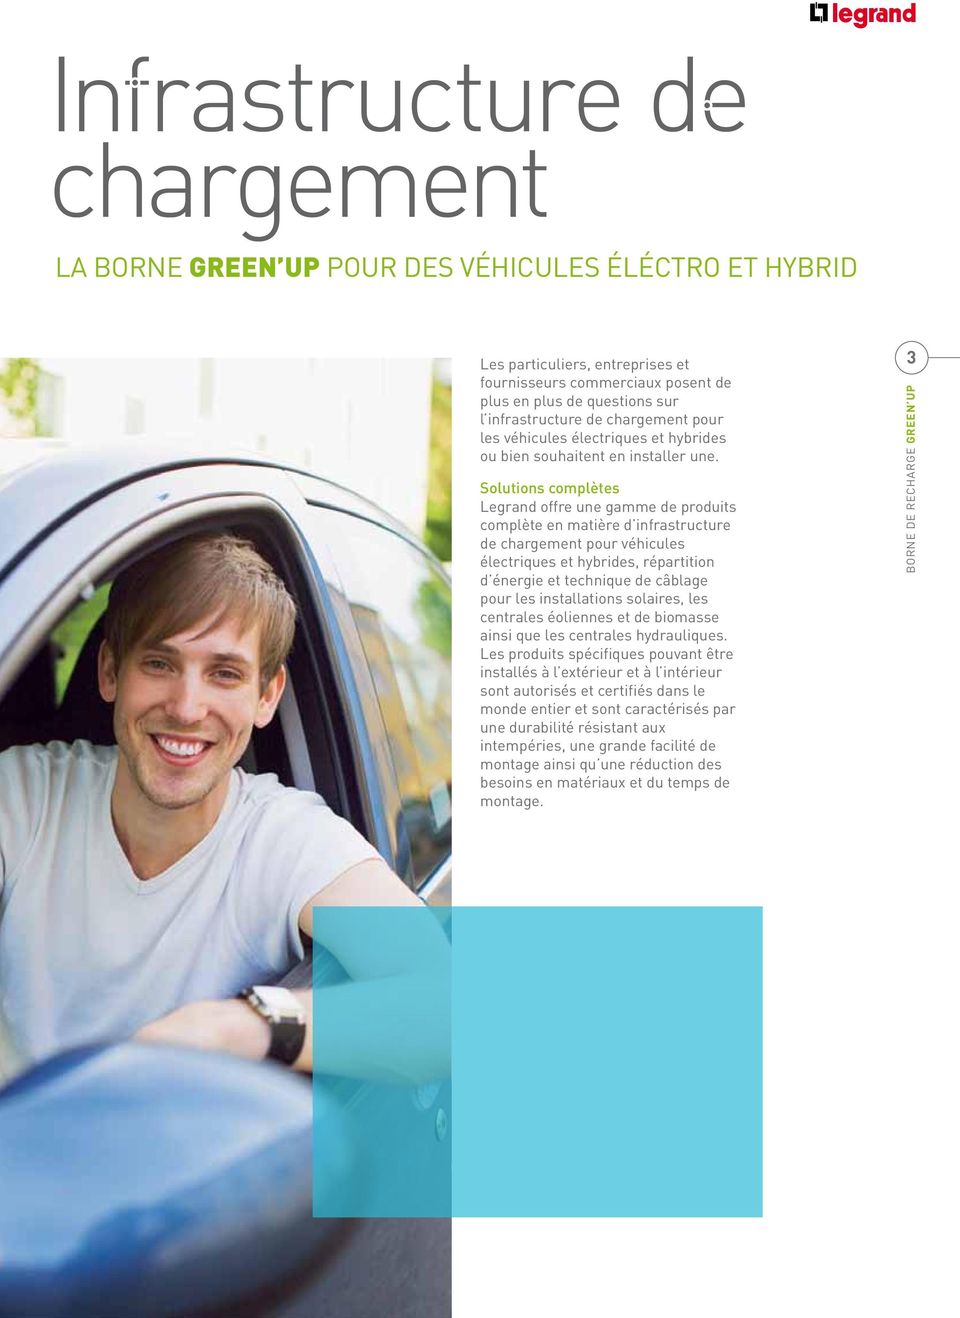 Solutions complètes Legrand offre une gamme de produits complète en matière d infrastructure de chargement pour véhicules électriques et hybrides, répartition d énergie et technique de câblage pour